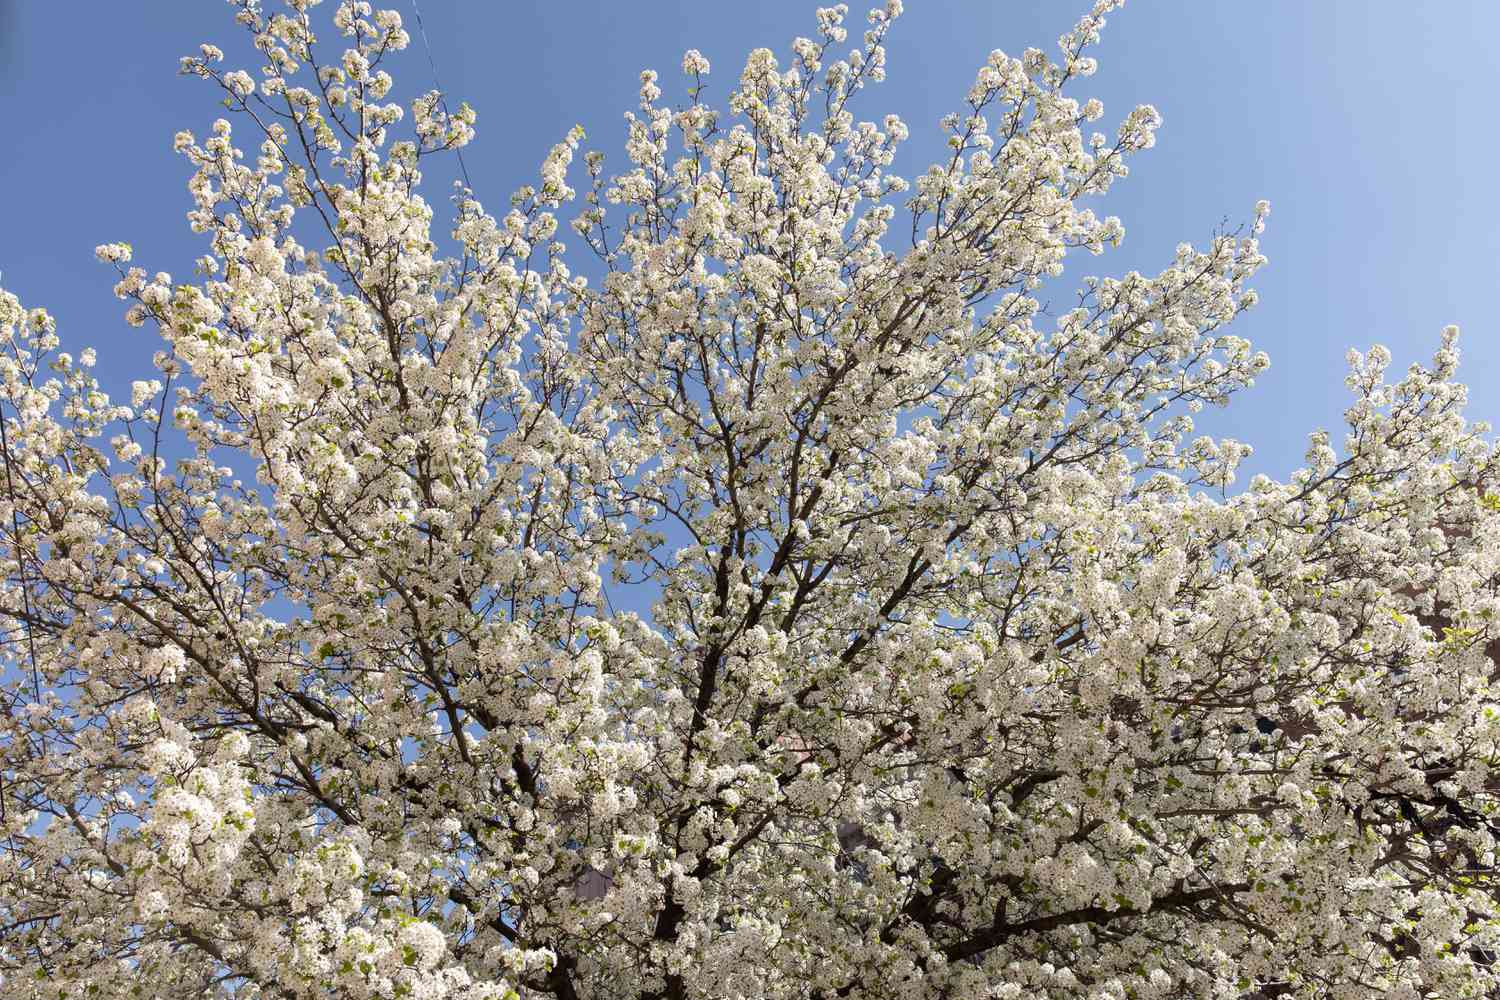 Kalley-Birnenbaum mit ausgestreckten Ästen mit weißen Blüten vor blauem Himmel